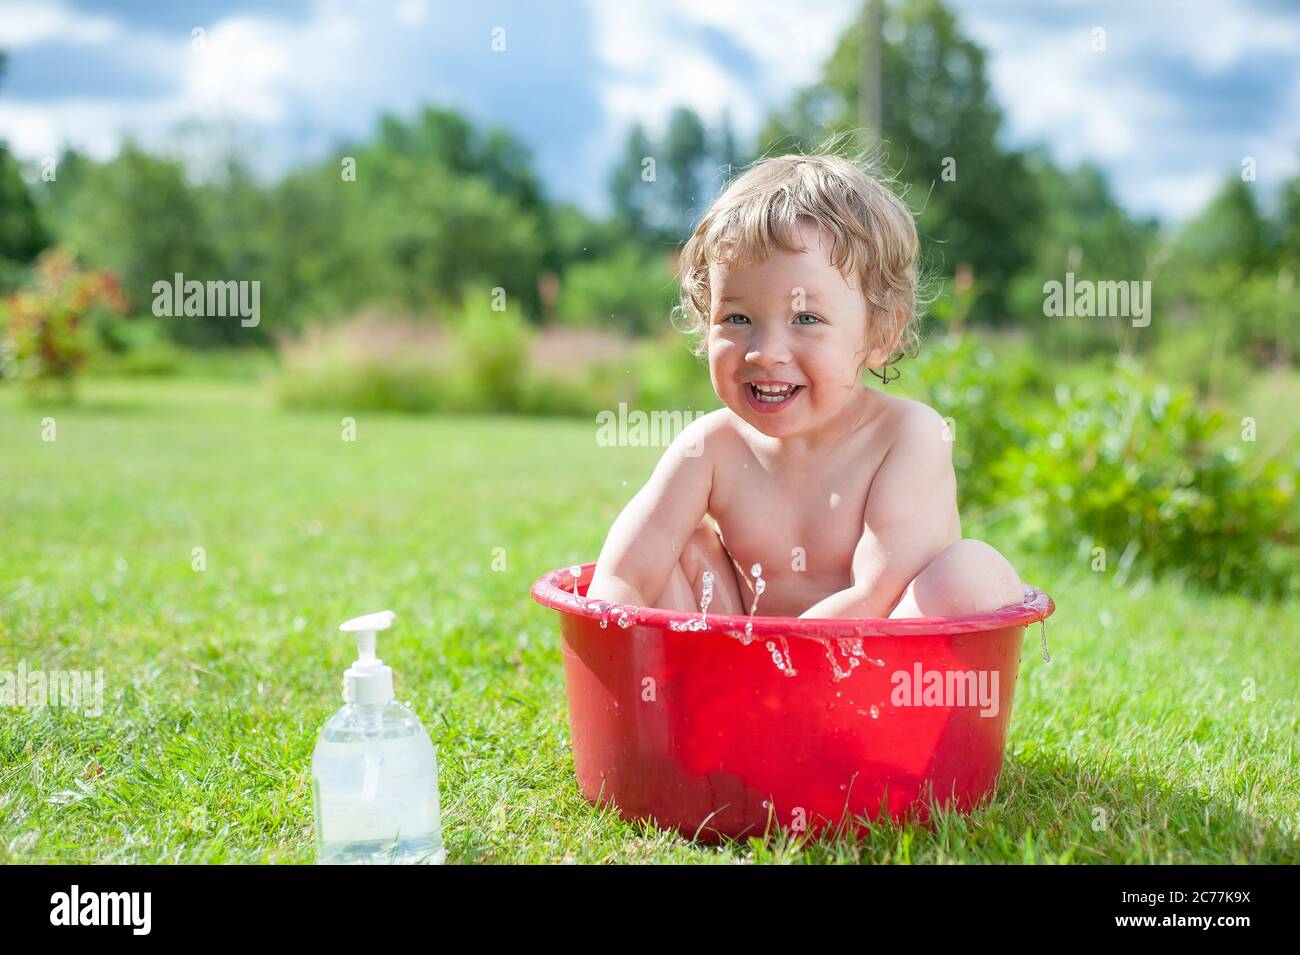 Kleines Baby wäscht im Bad auf dem grünen Gras. Kleines Baby, das Spaß hat,  spritzt Wasser und lacht. Glückliches Kind, das draußen auf grünem Gras  baden kann Stockfotografie - Alamy